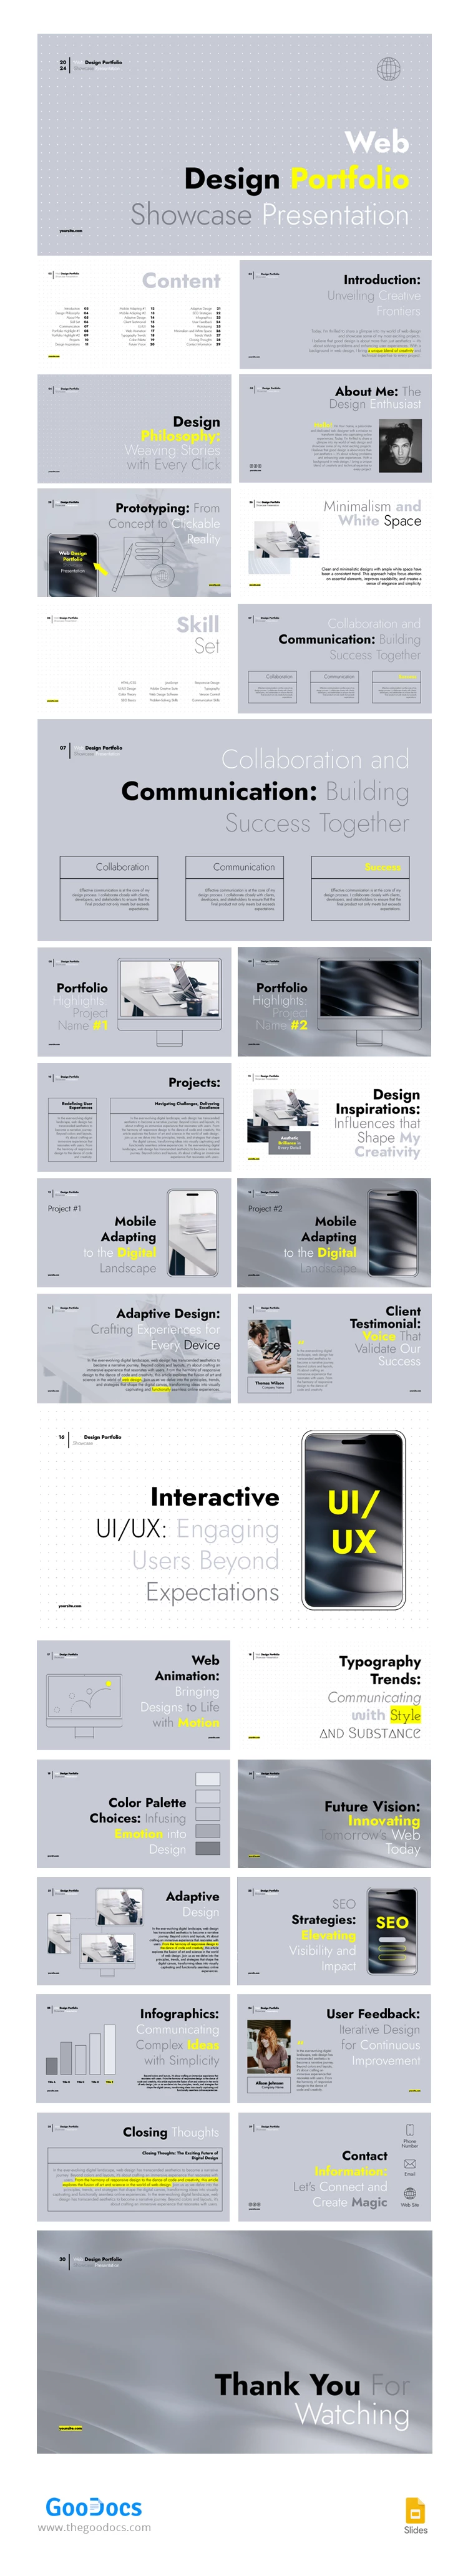 Mostrar Portfólio de Design de Websites. - free Google Docs Template - 10067564